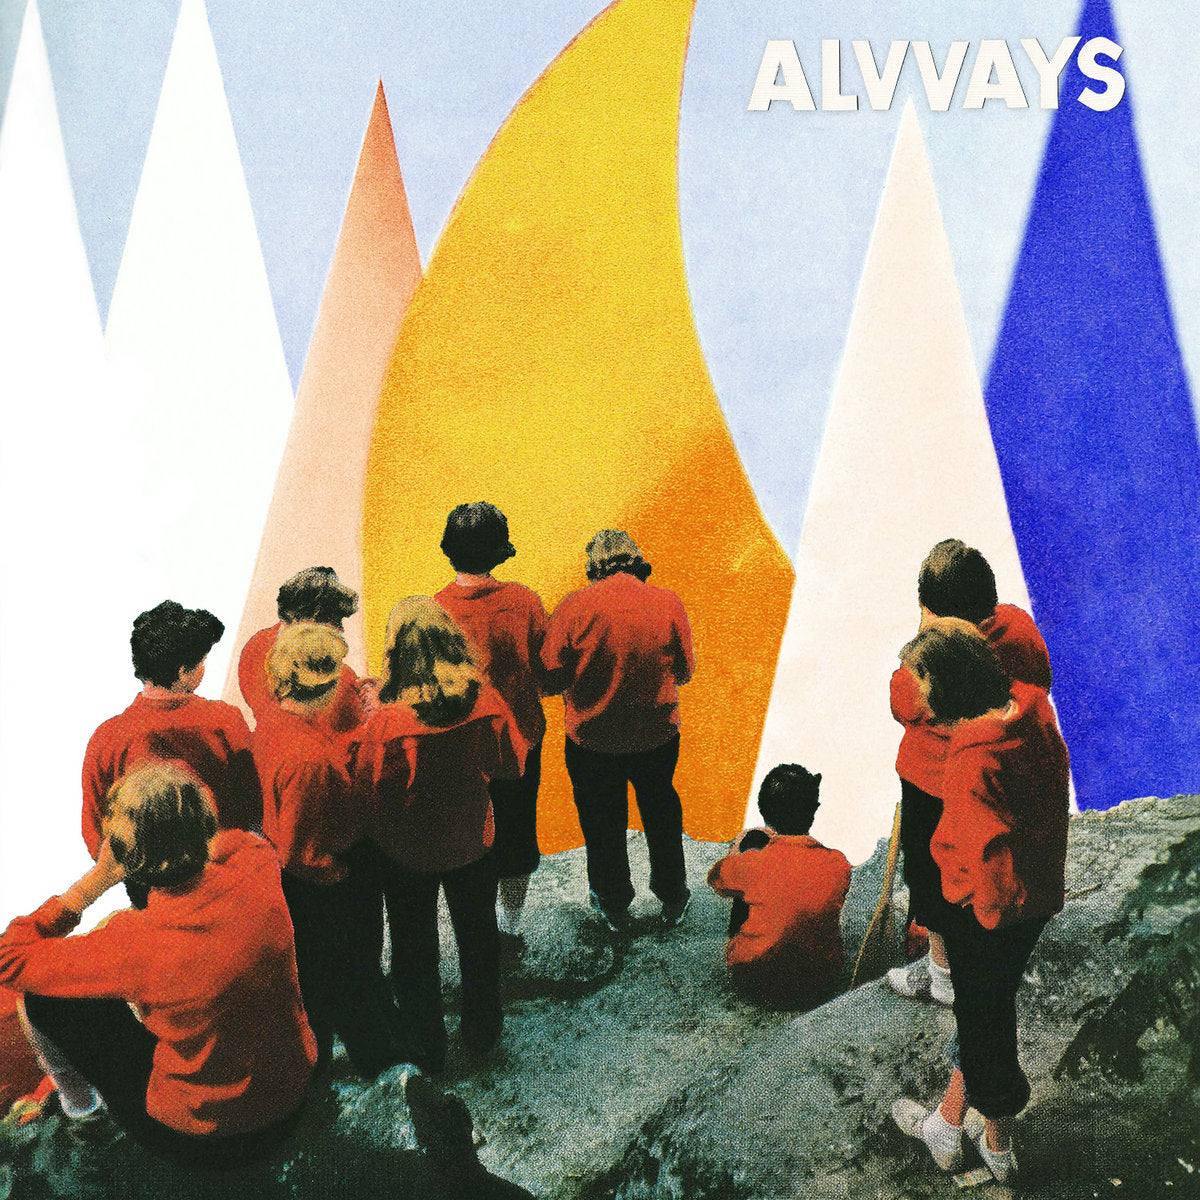 Alvvays "Antisocialites" 12" Vinyl